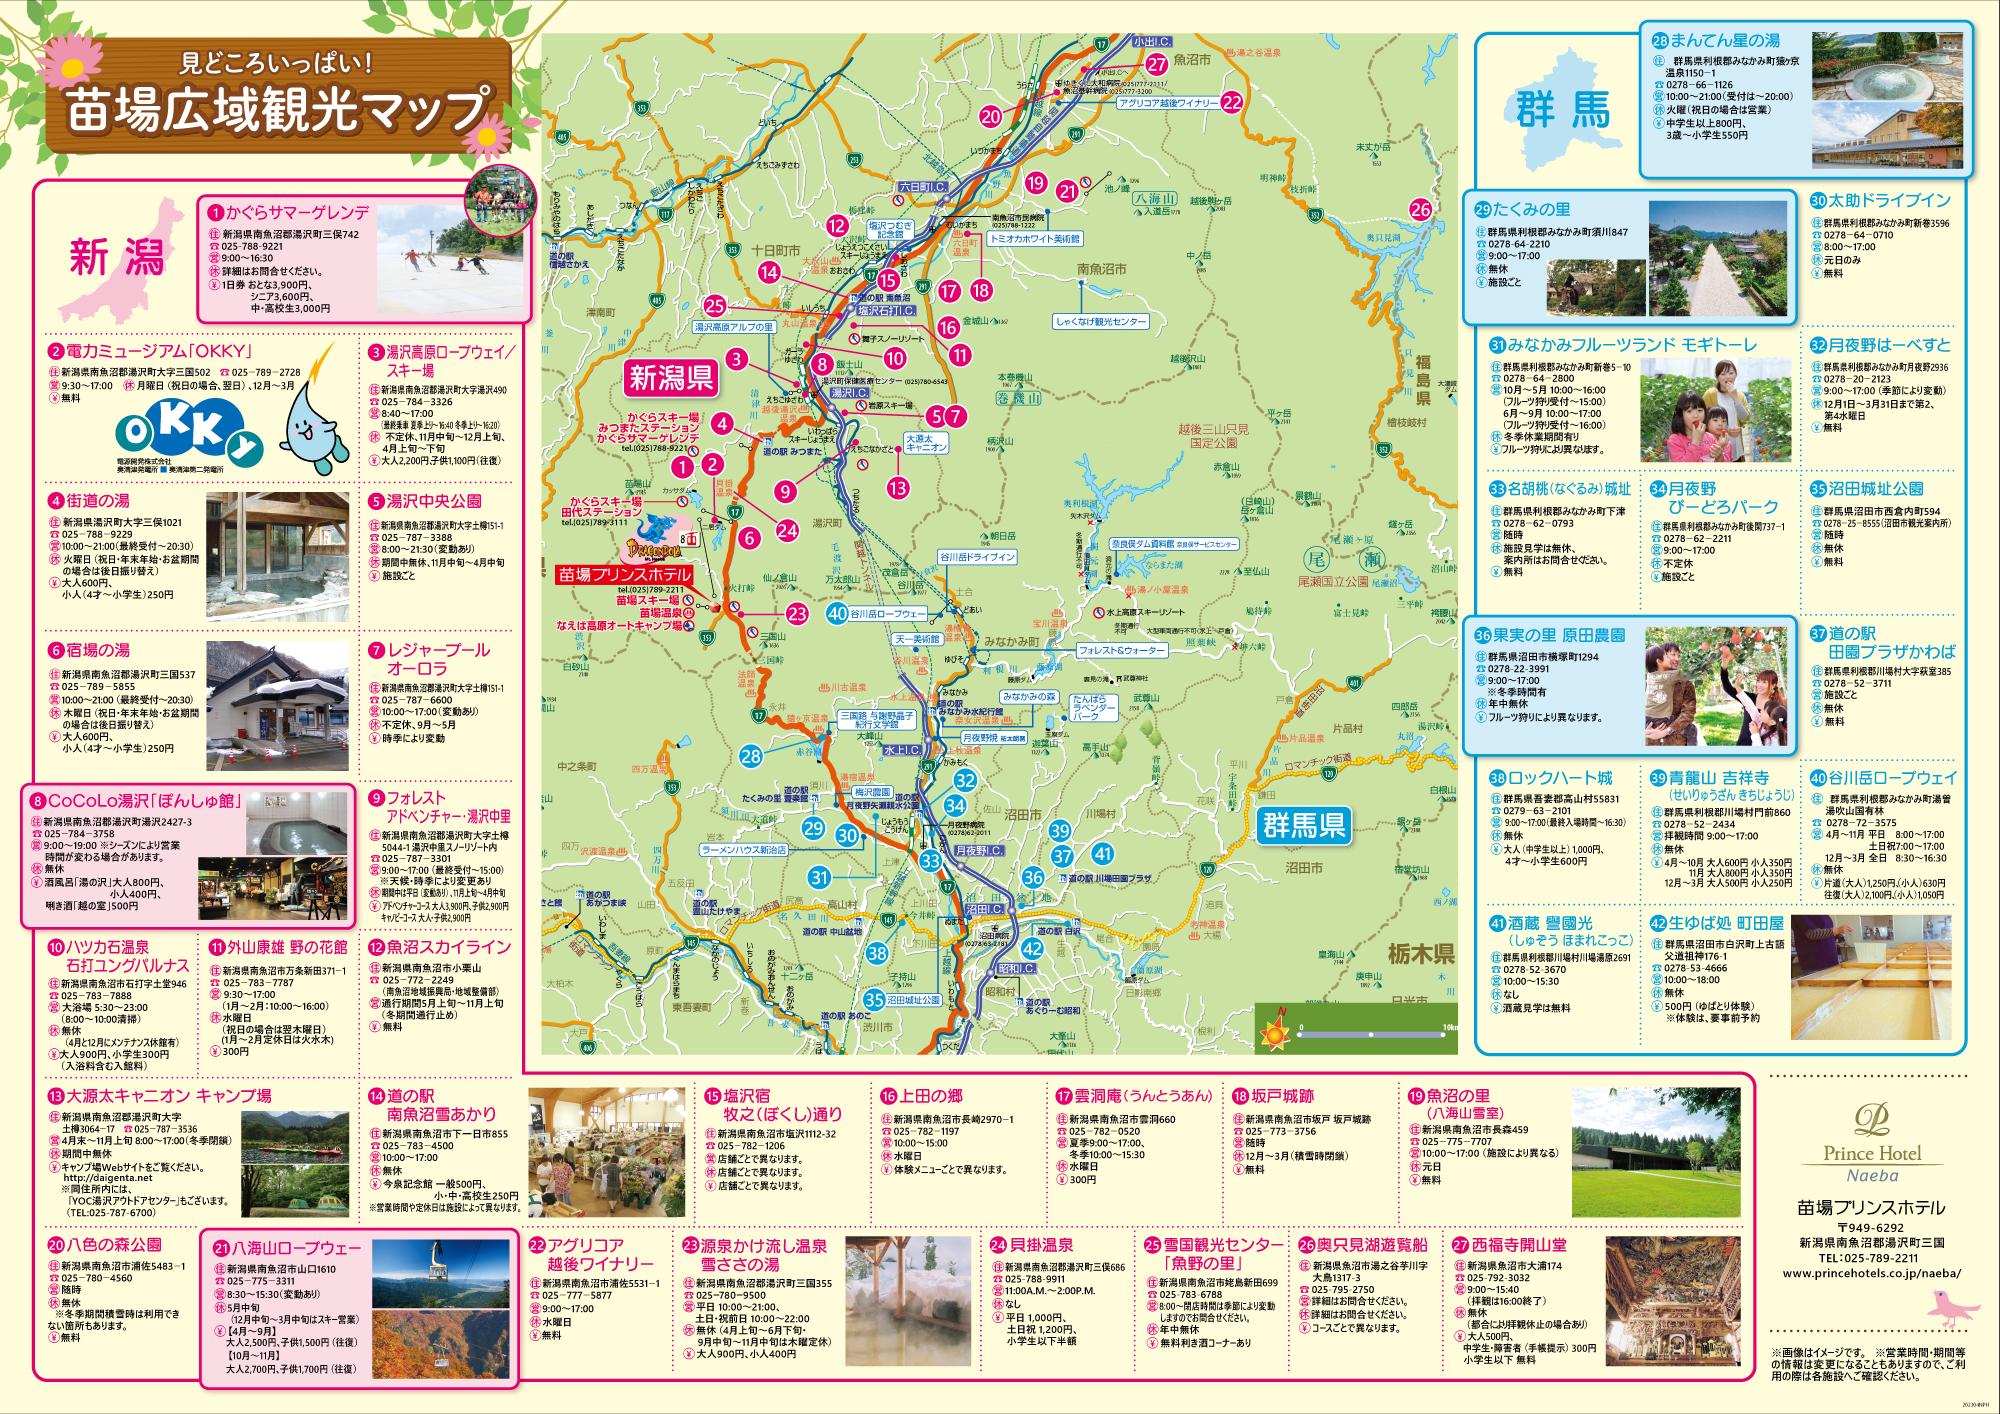 苗場広域観光マップイメージ